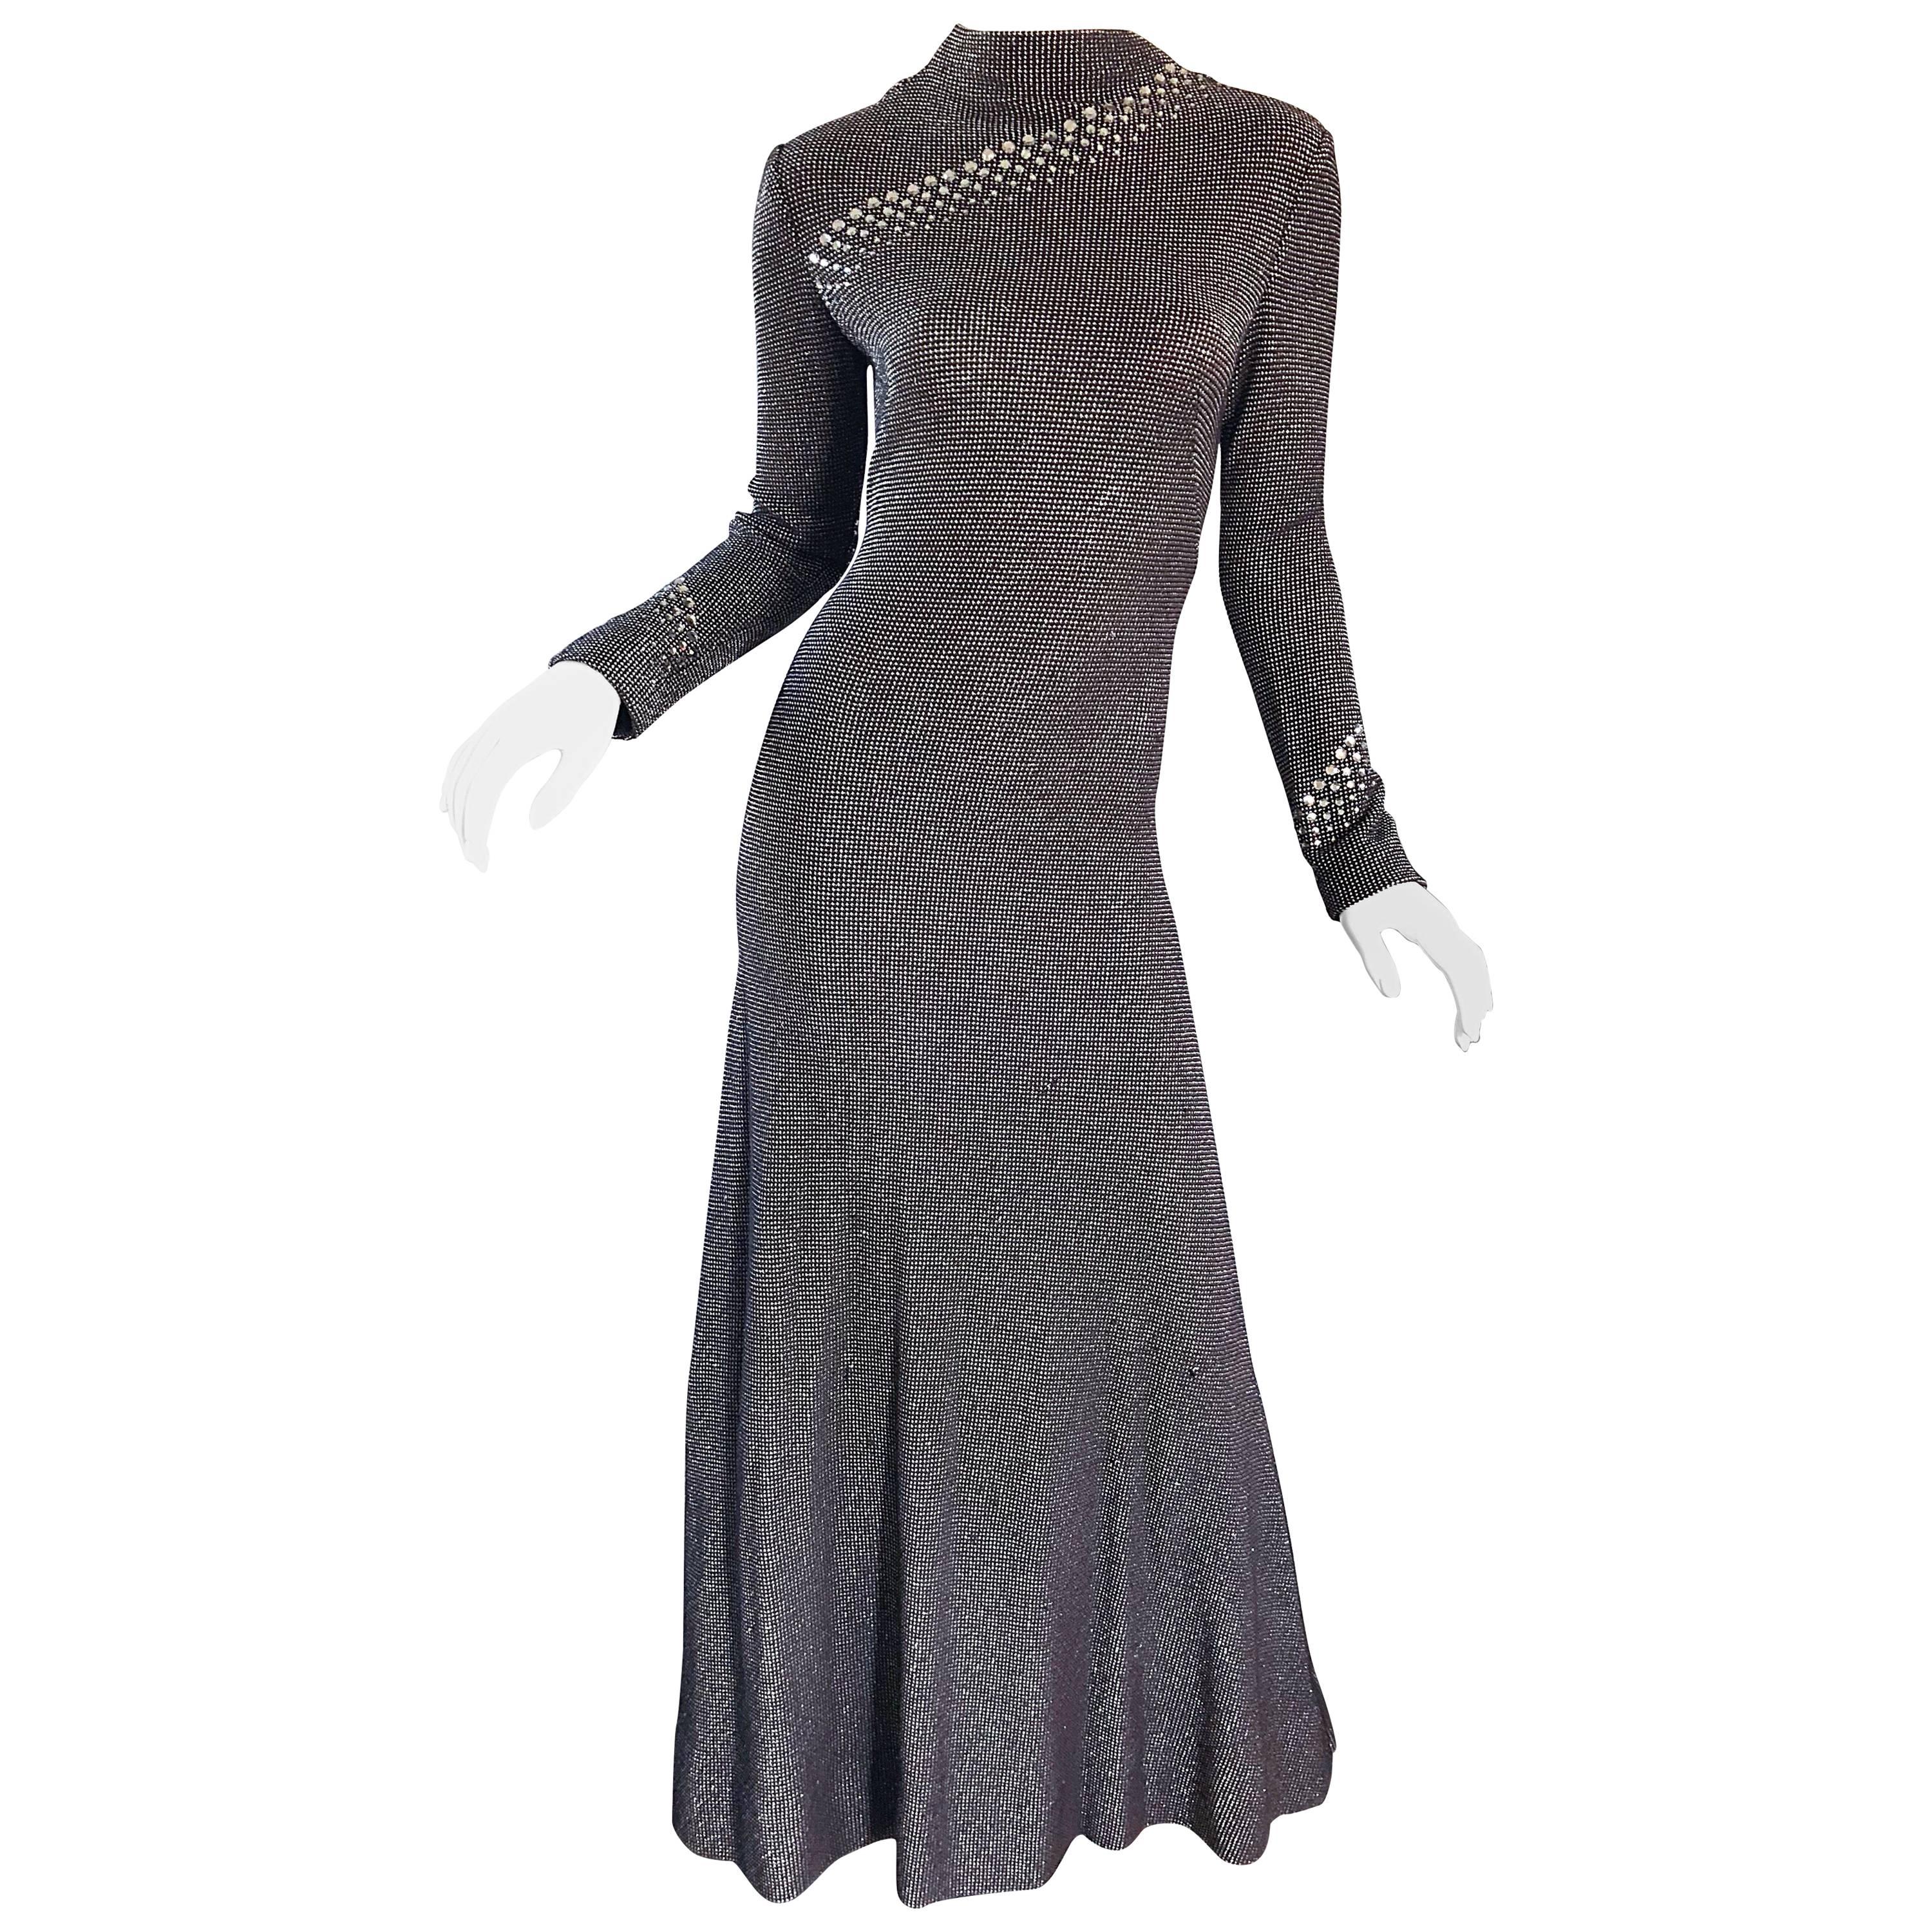 Pauline Trigere 1970s Black, White, Brown Rhinestone Encrusted Vintage 70s Gown